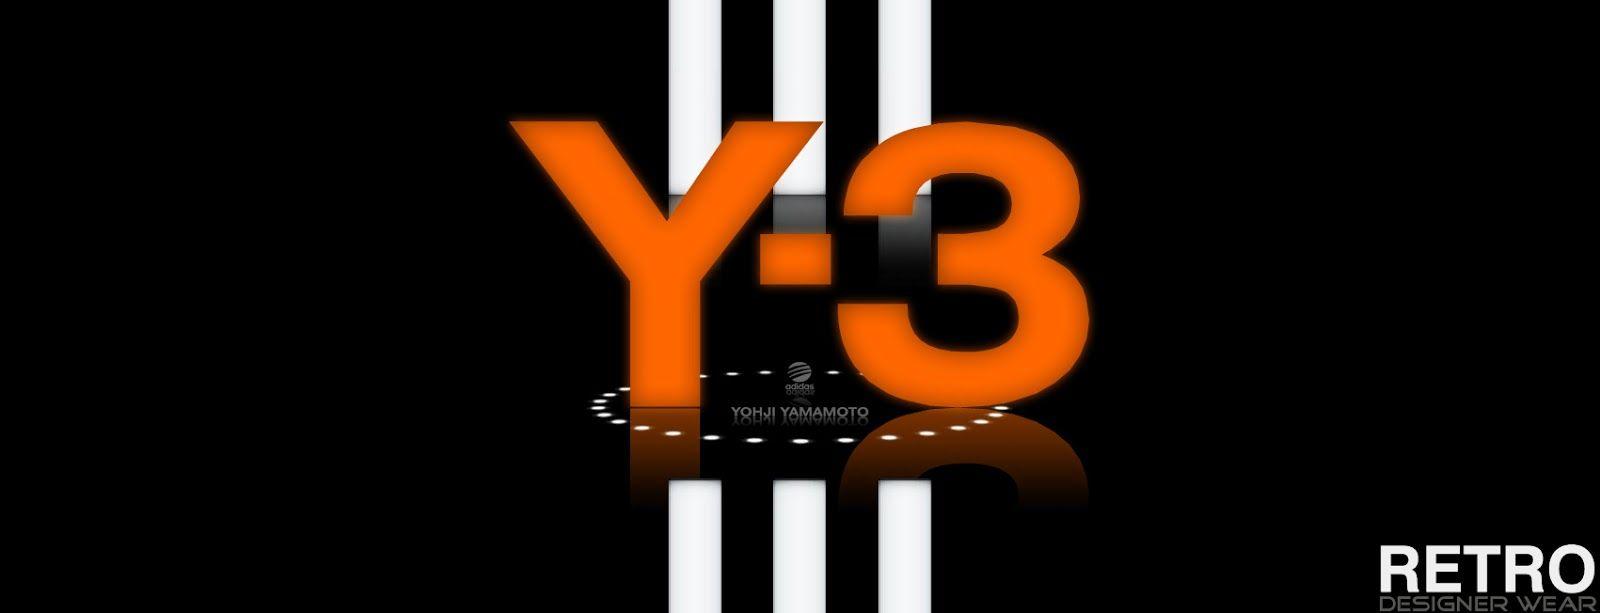 Yohji Yamamoto Logo - Y-3 Brand by Adidas and Yohji Yamamoto